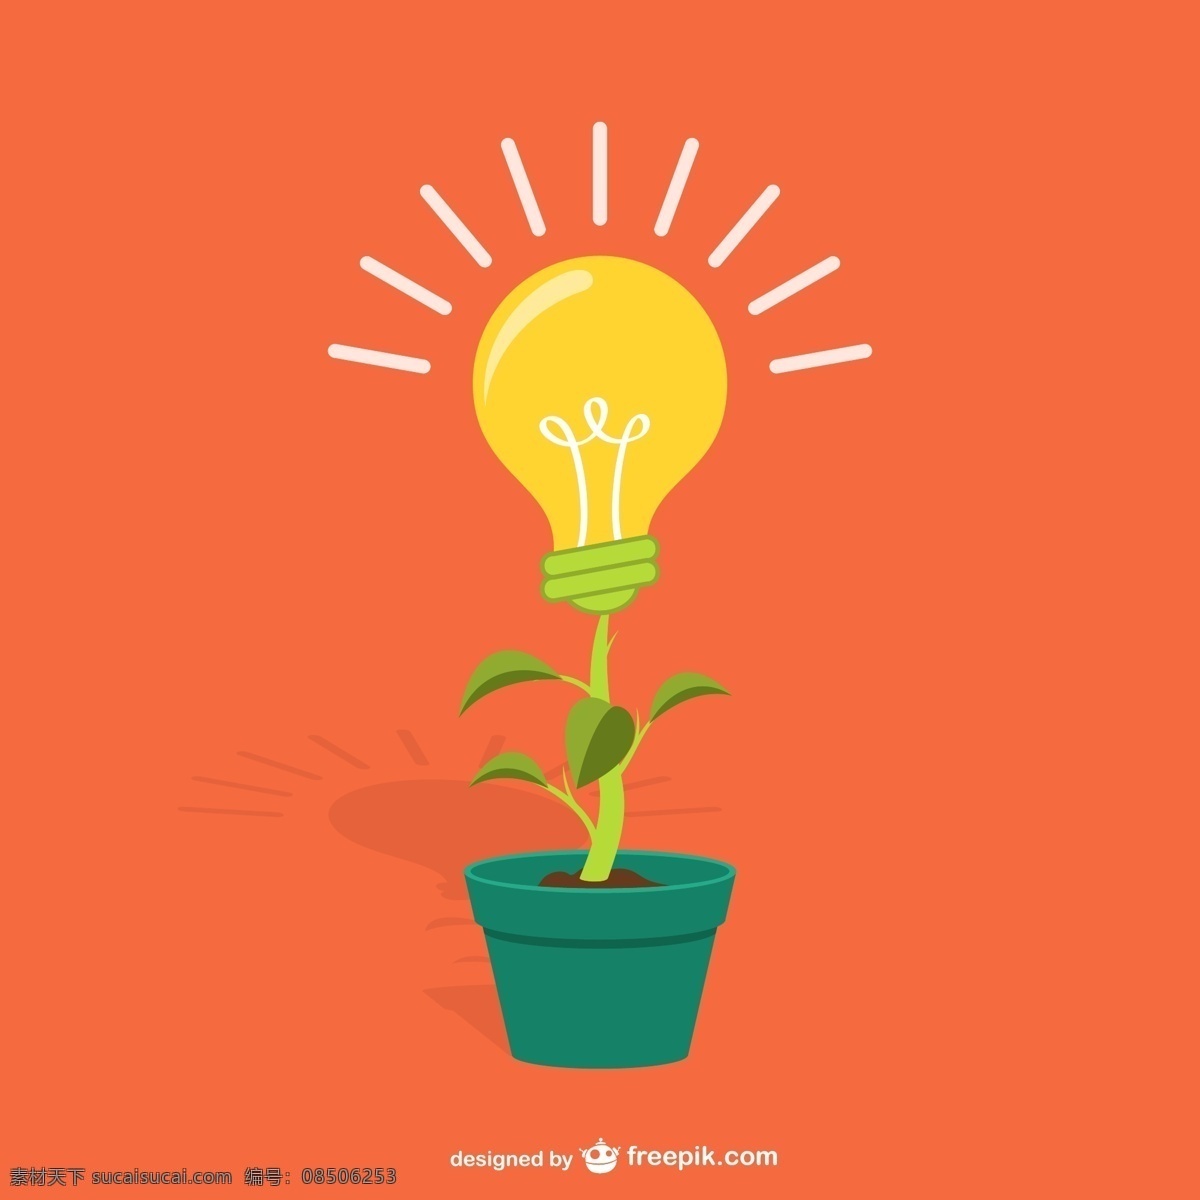 灯泡 的卡 通 植物 光 卡通 理念 创意 想法 企业家 创业 水平 植物载体 植物表达载体 橙色